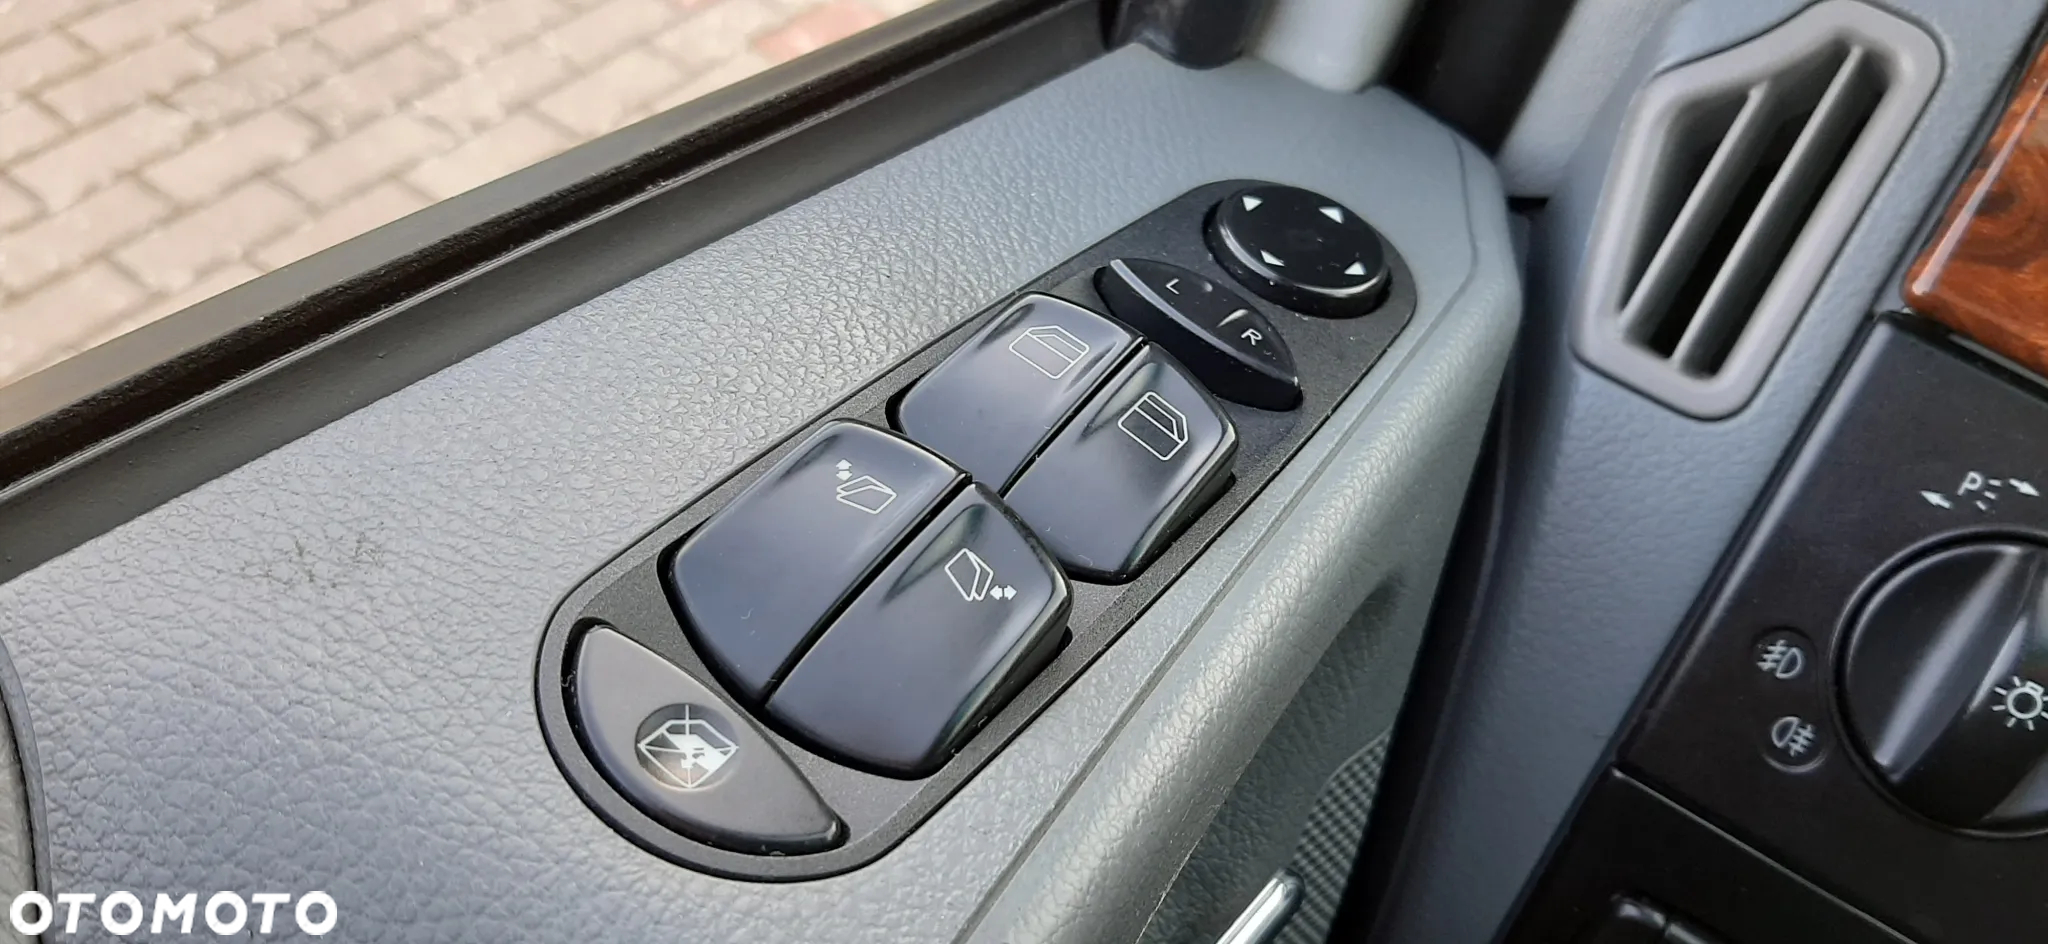 Mercedes-Benz Viano 2.2 CDI extralang Automatik Ambiente - 10